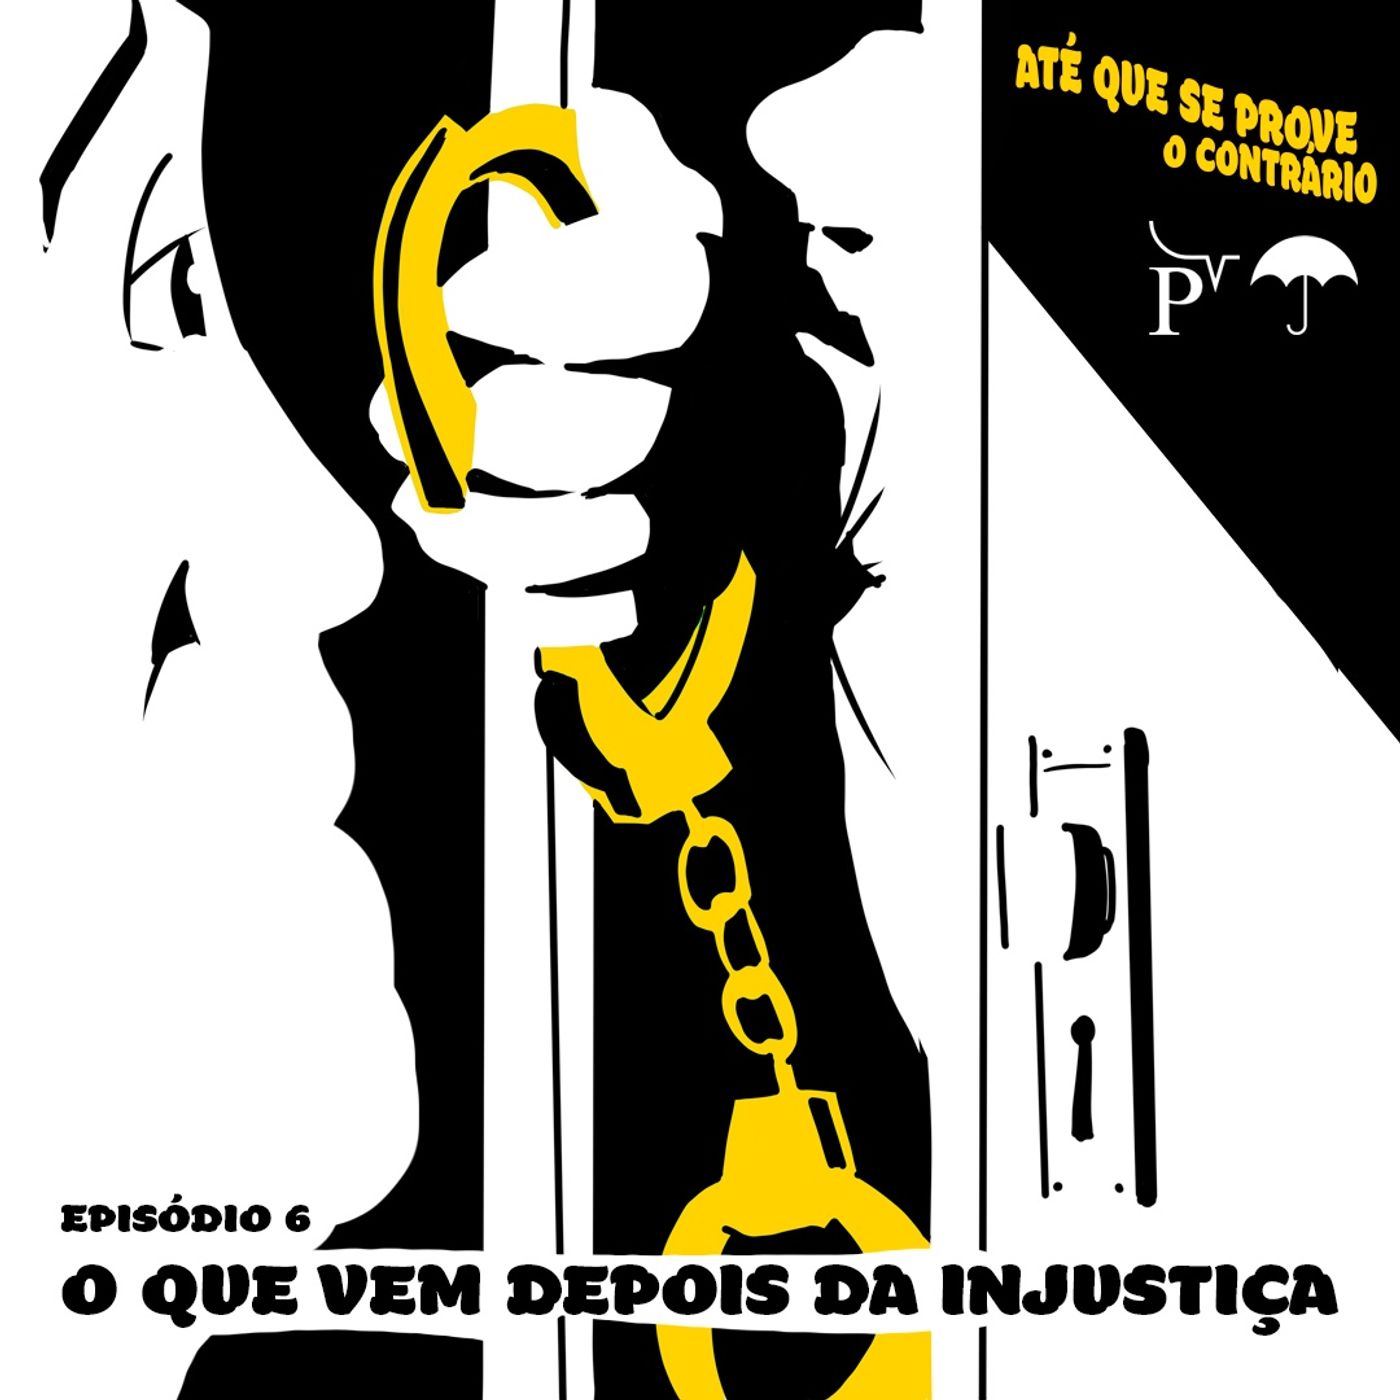 EP 06 - O que vem depois da injustiça